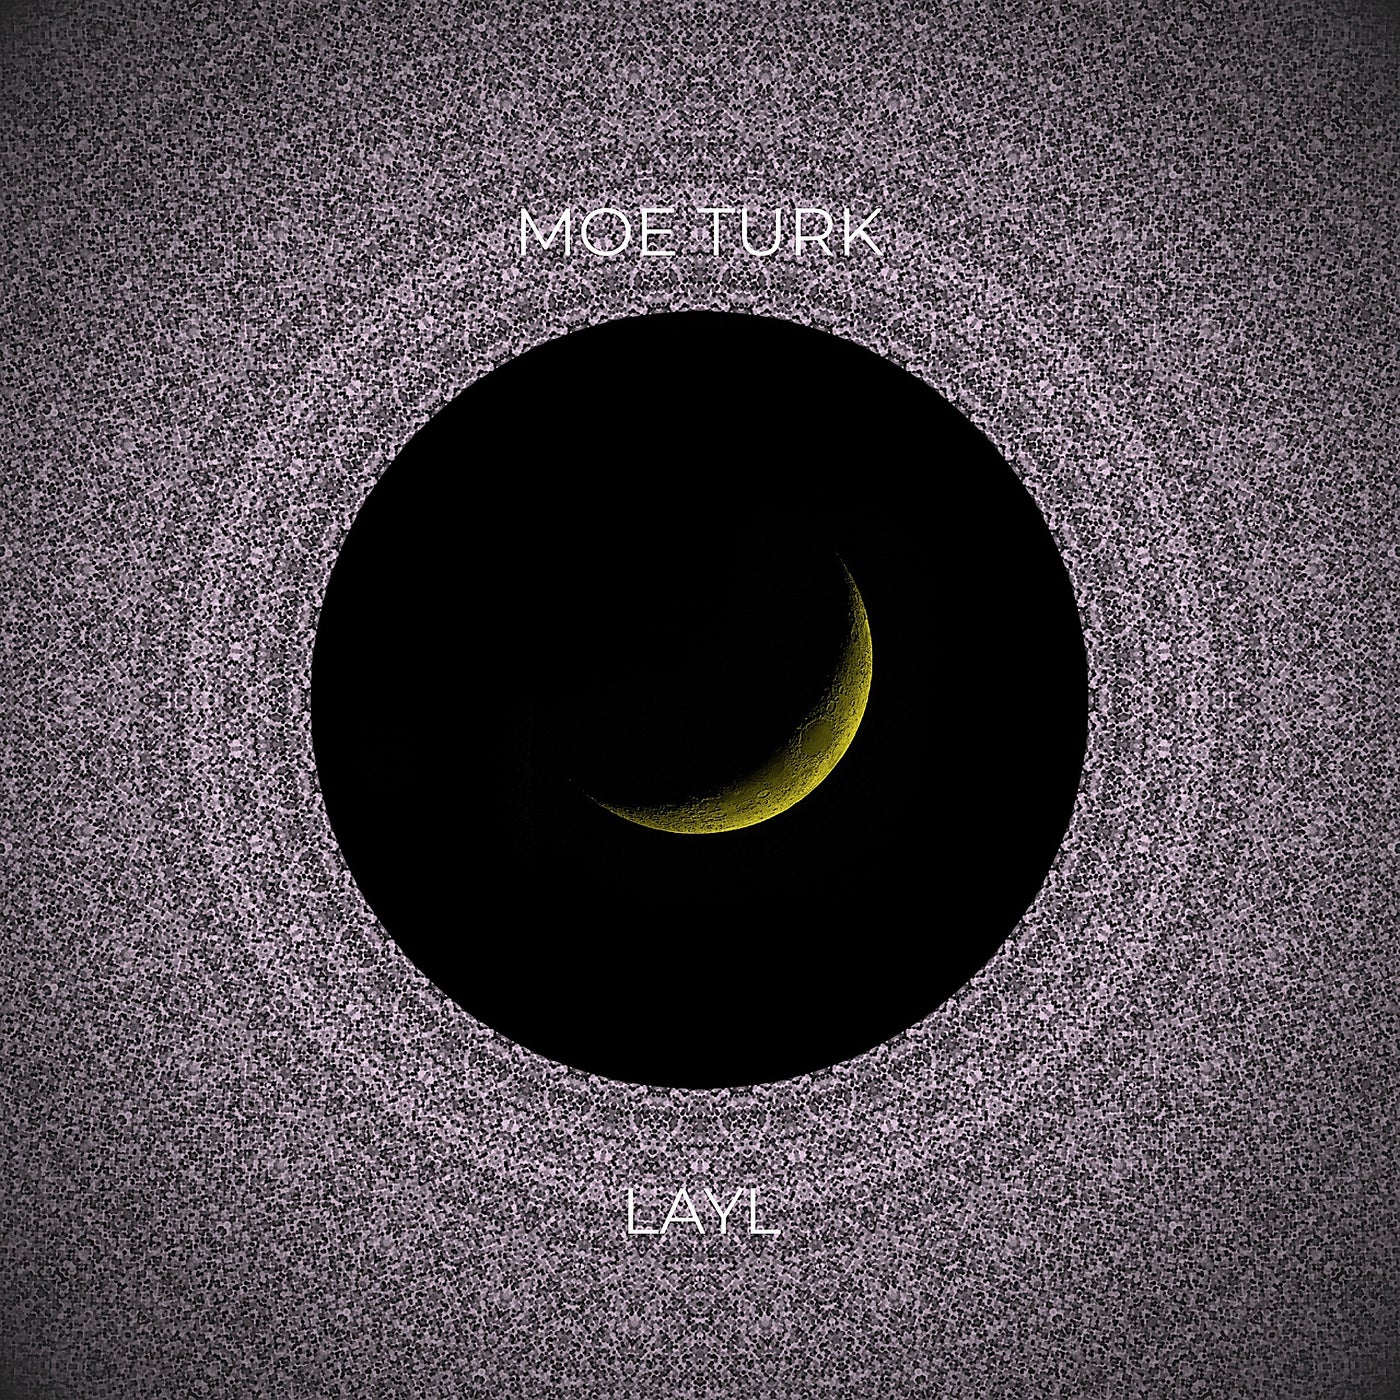 Moe Turk - Layl [BTZ204]